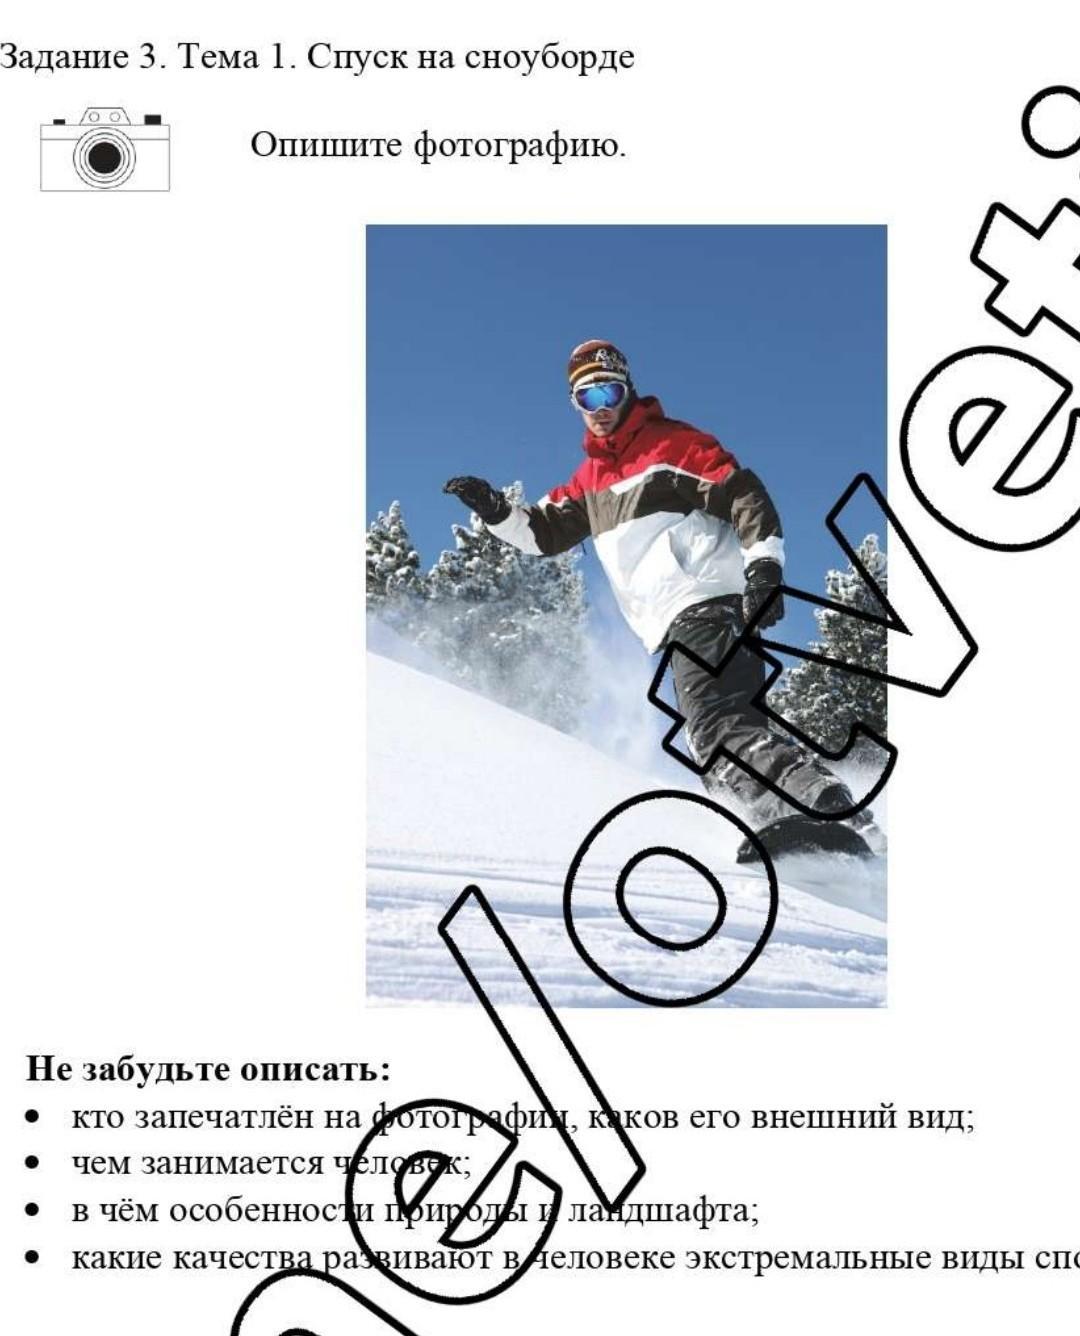 Описать фотографию спуск на сноуборде 10 предложений